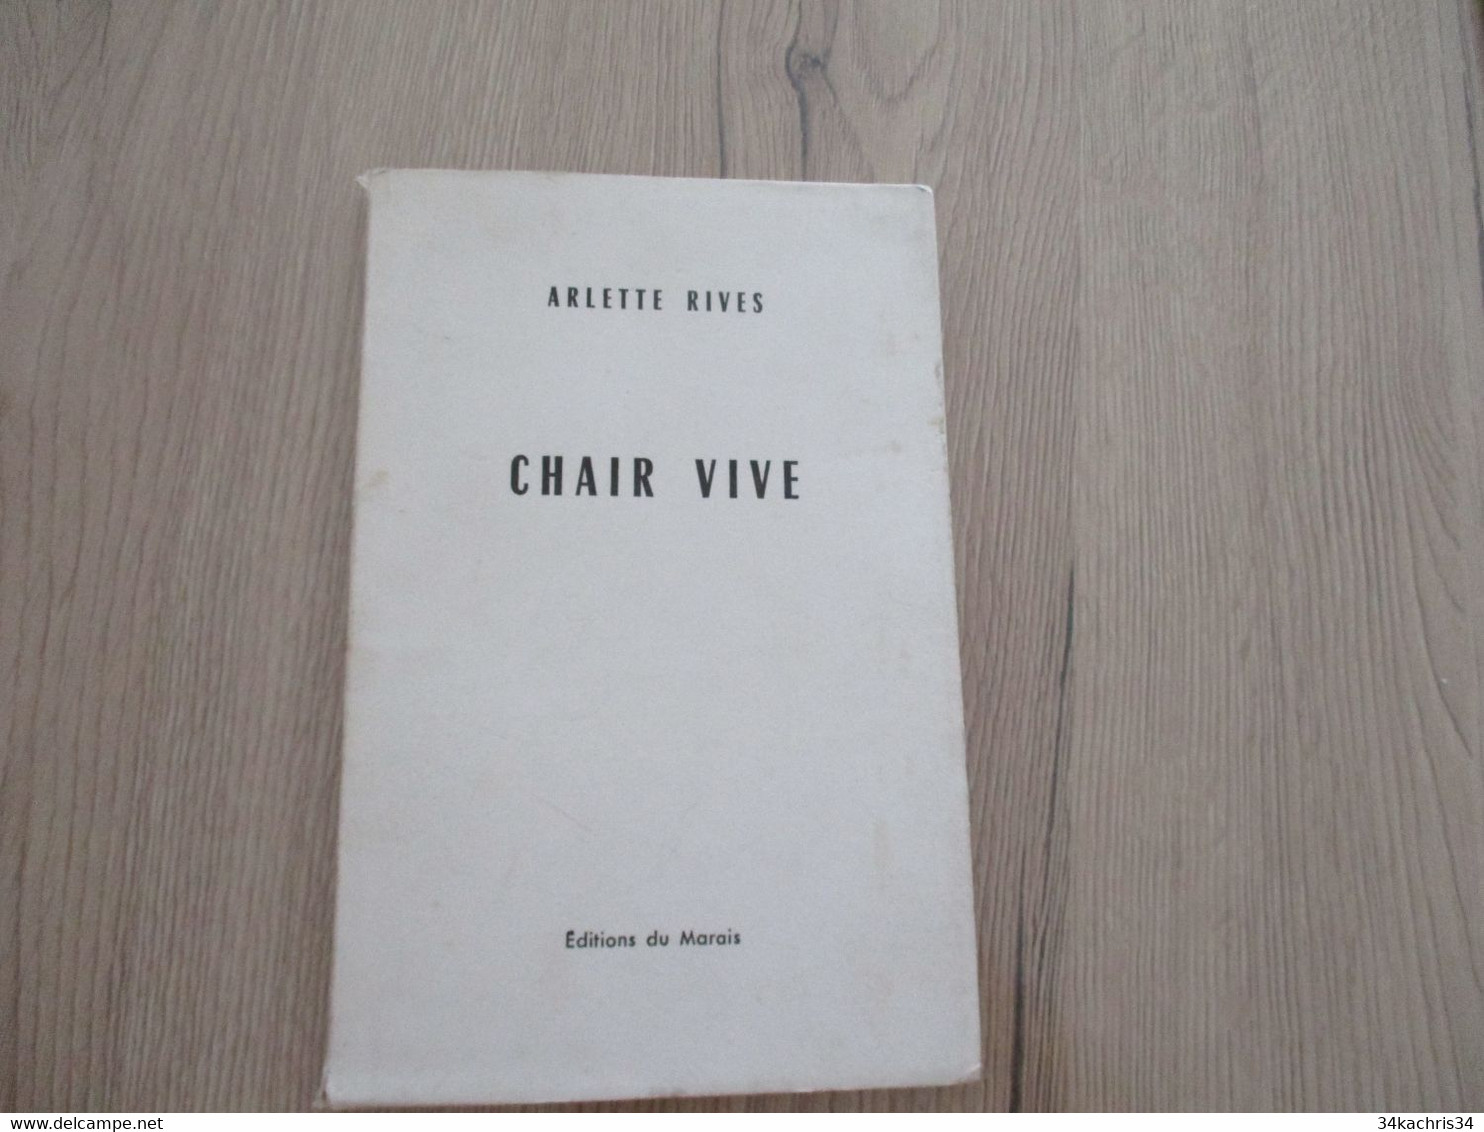 Poèsie Chez EdIt Marais Arlette Rives Chair Vive Poème En édition Originale + 1 Envoi + 1 Poème Original Sybellus - French Authors